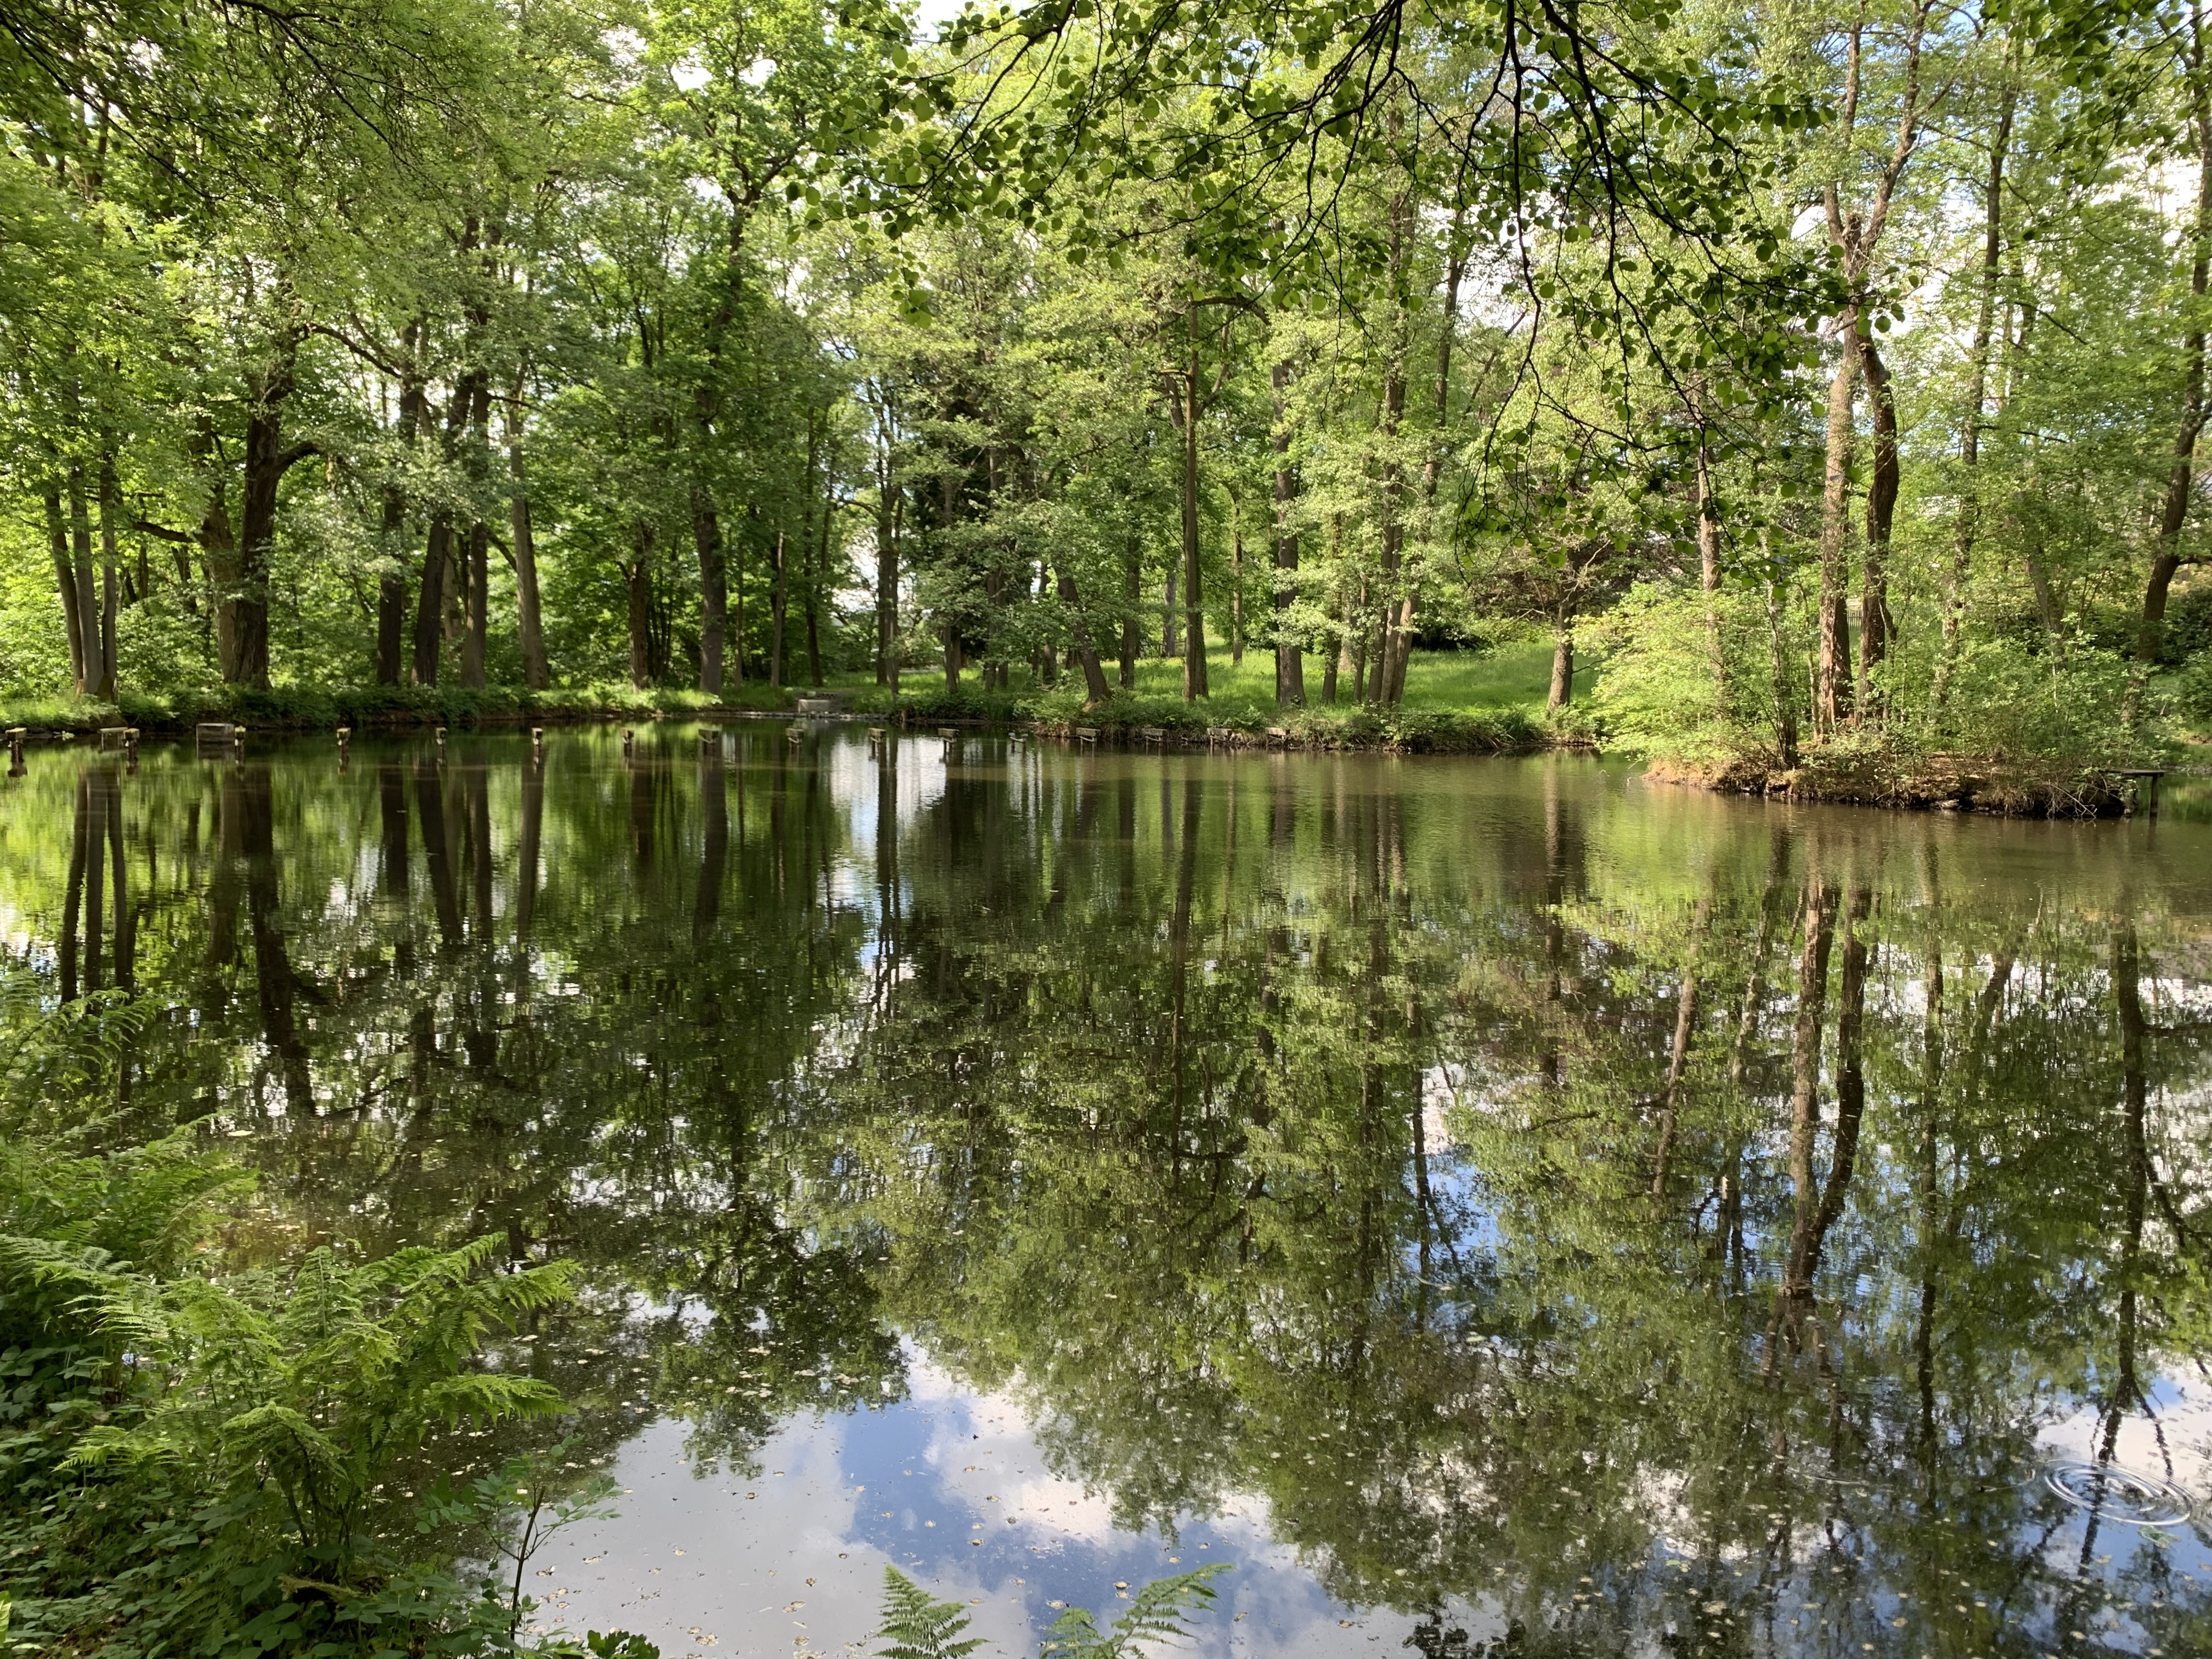 Im Teich spiegelt sich der Wald. Alles komplett grün im Übergang vom Frühling zum Sommer.